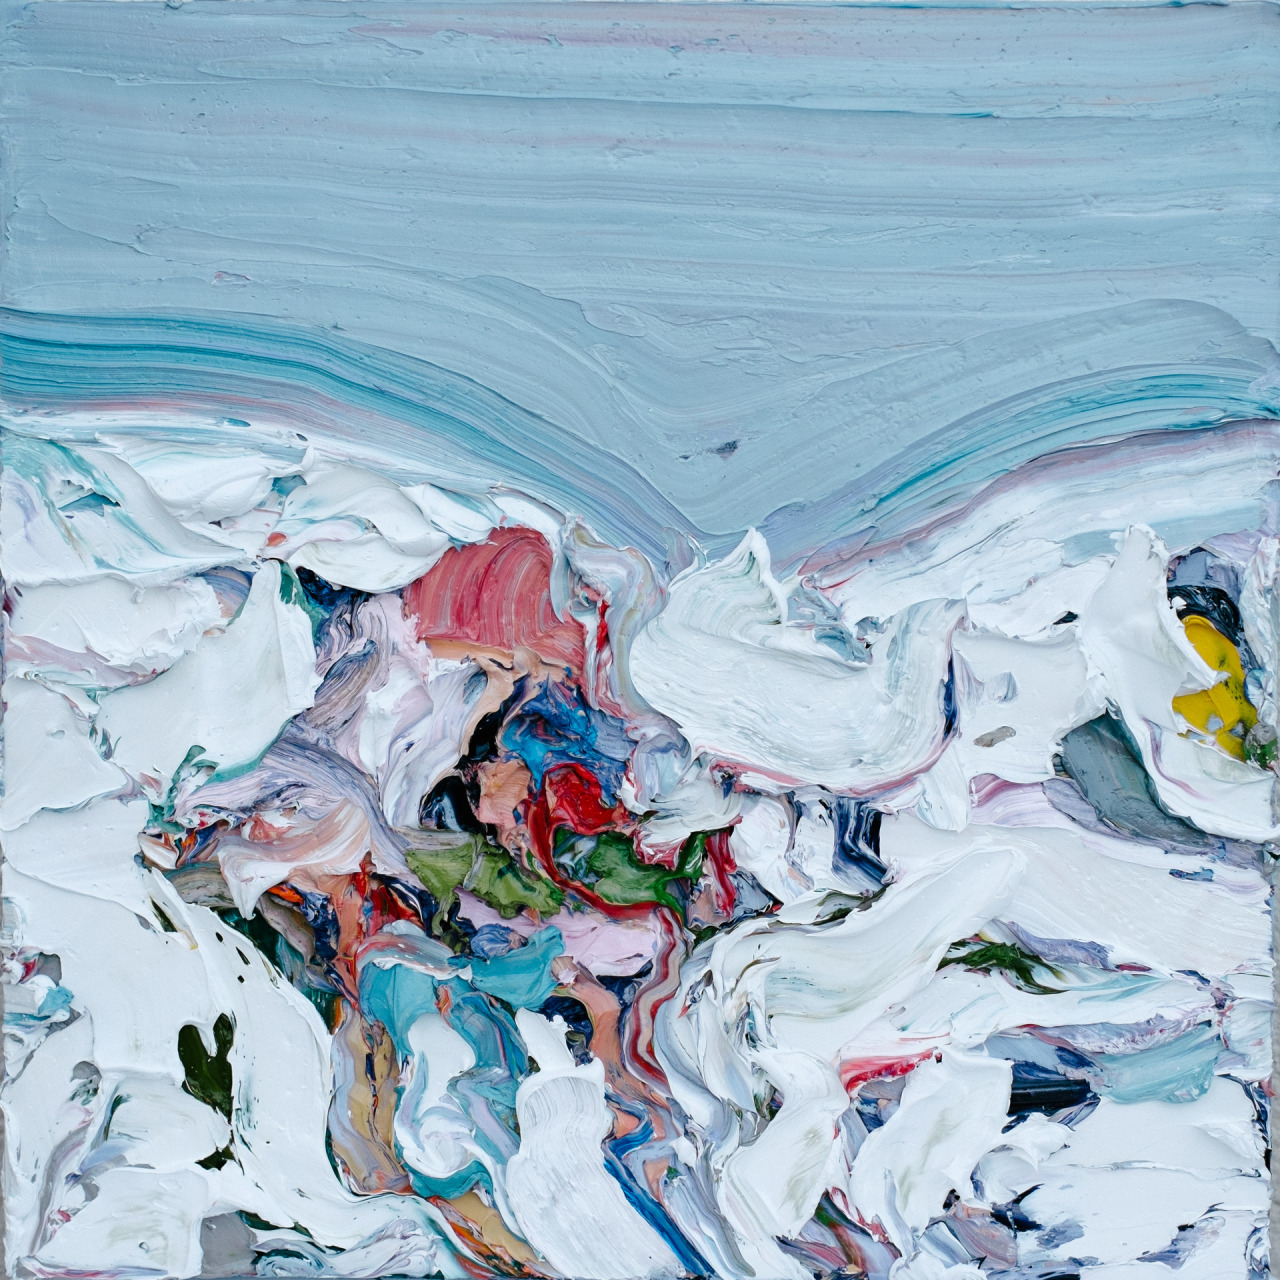  Gus Hughes (b. 1984, Ireland) - Klinghoffer III (Body In Snow), 2014    Paintings: